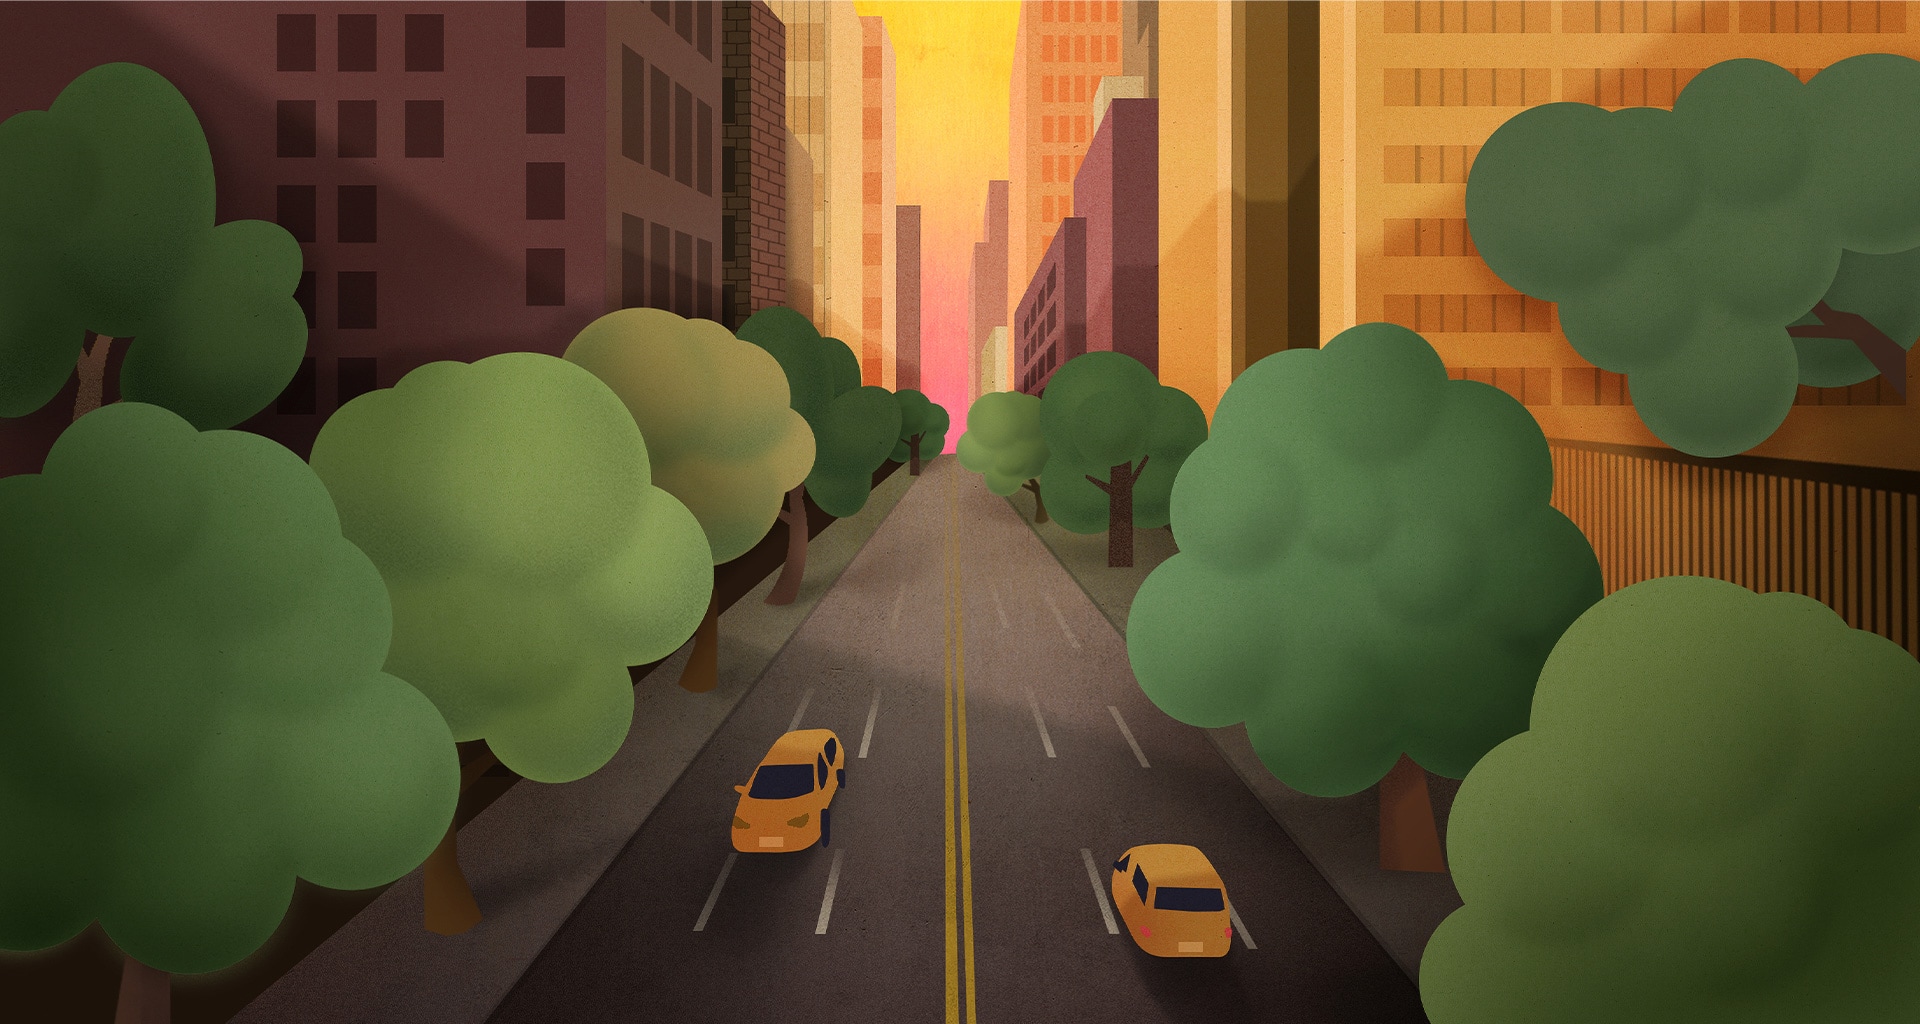 綠樹成列的城市道路上有車穿越的蠟筆風格插畫